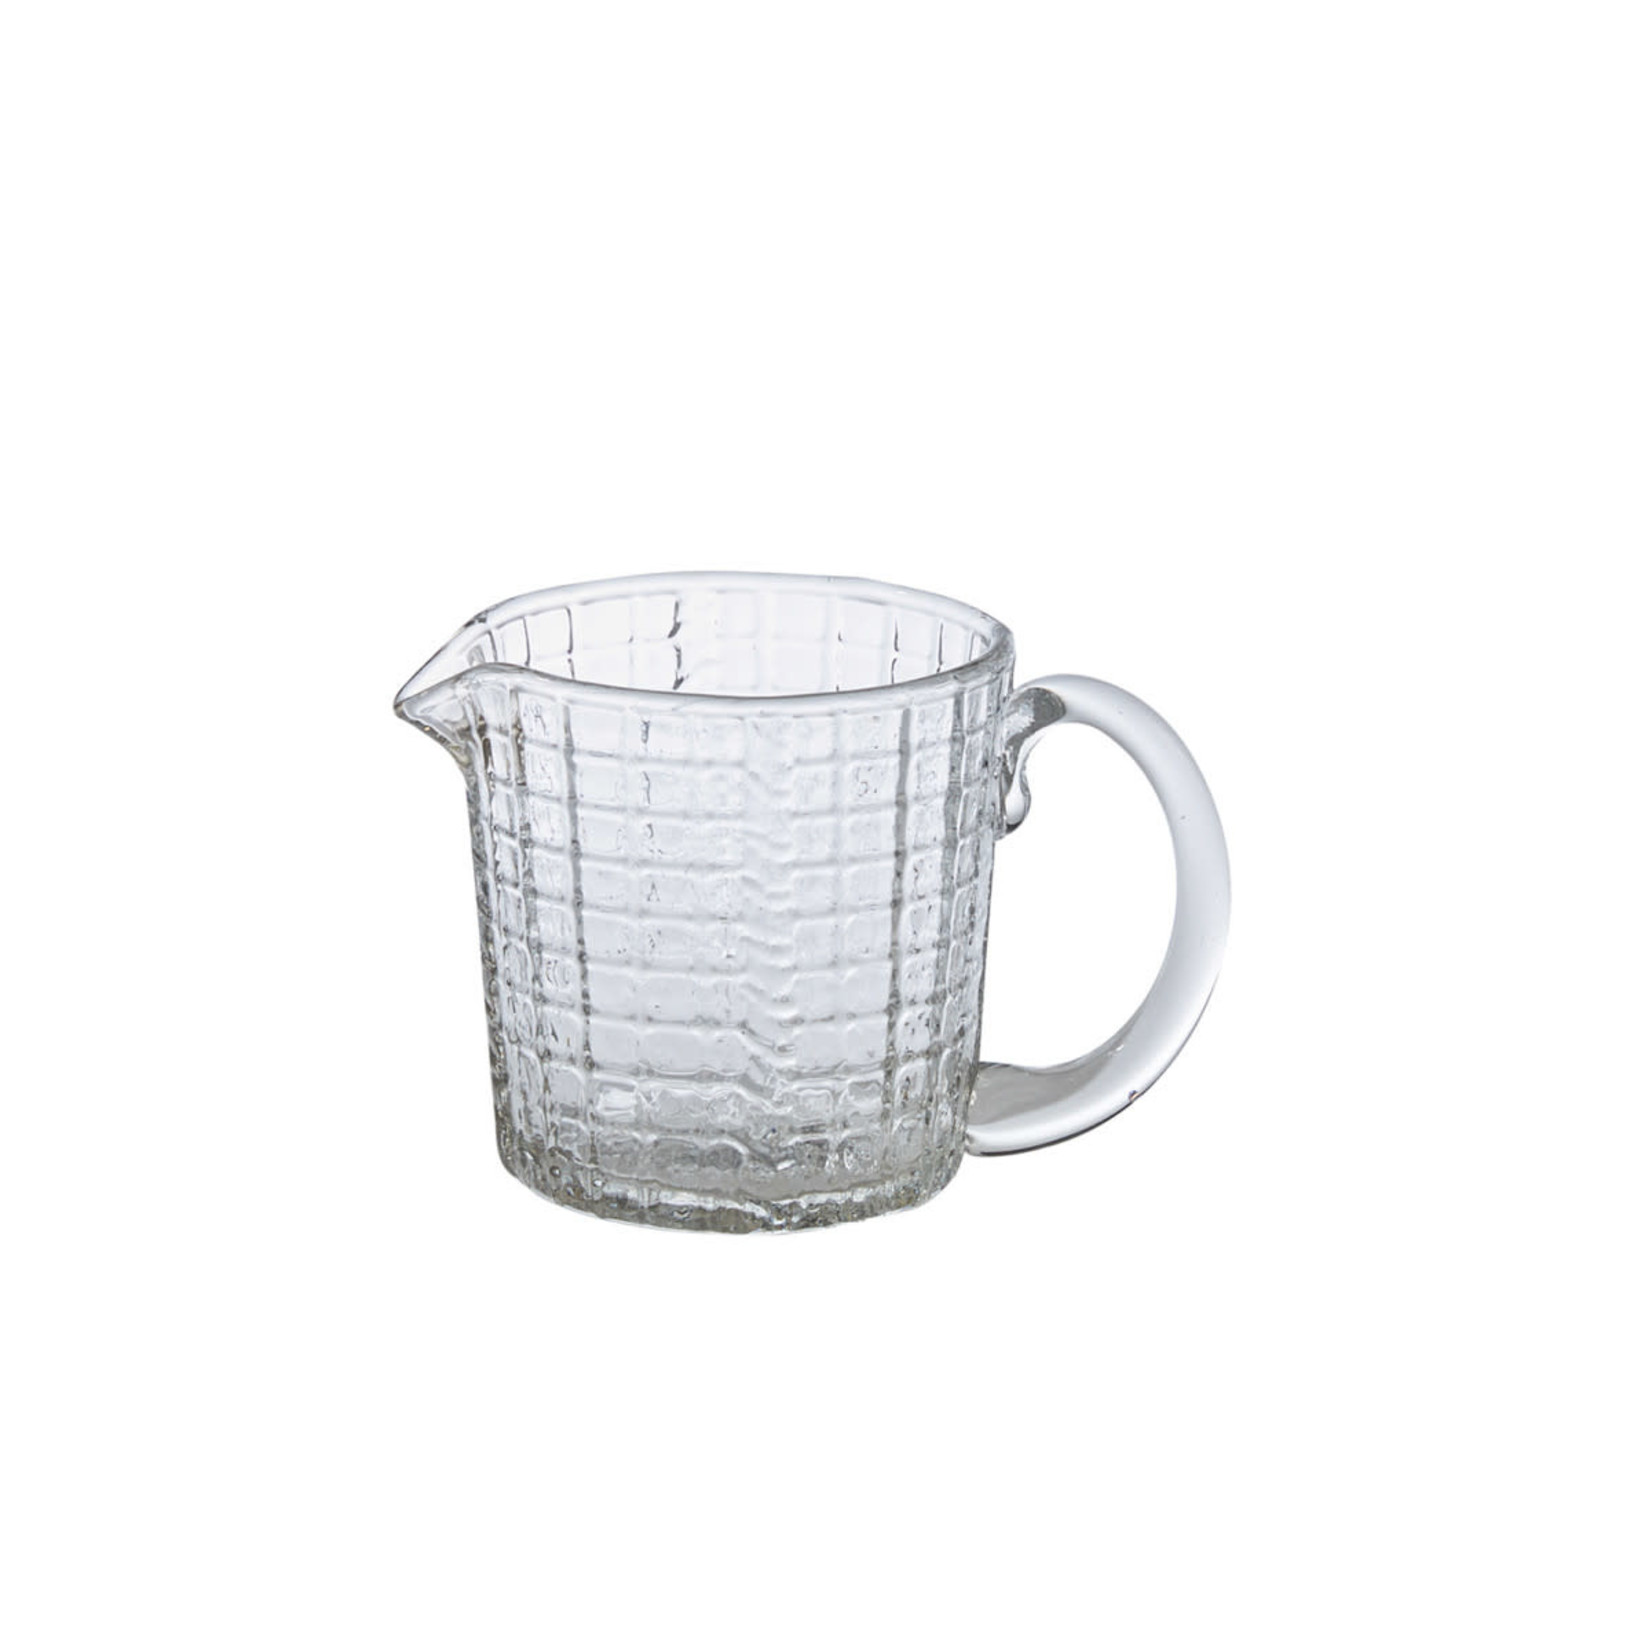 Glass pitcher w/grid